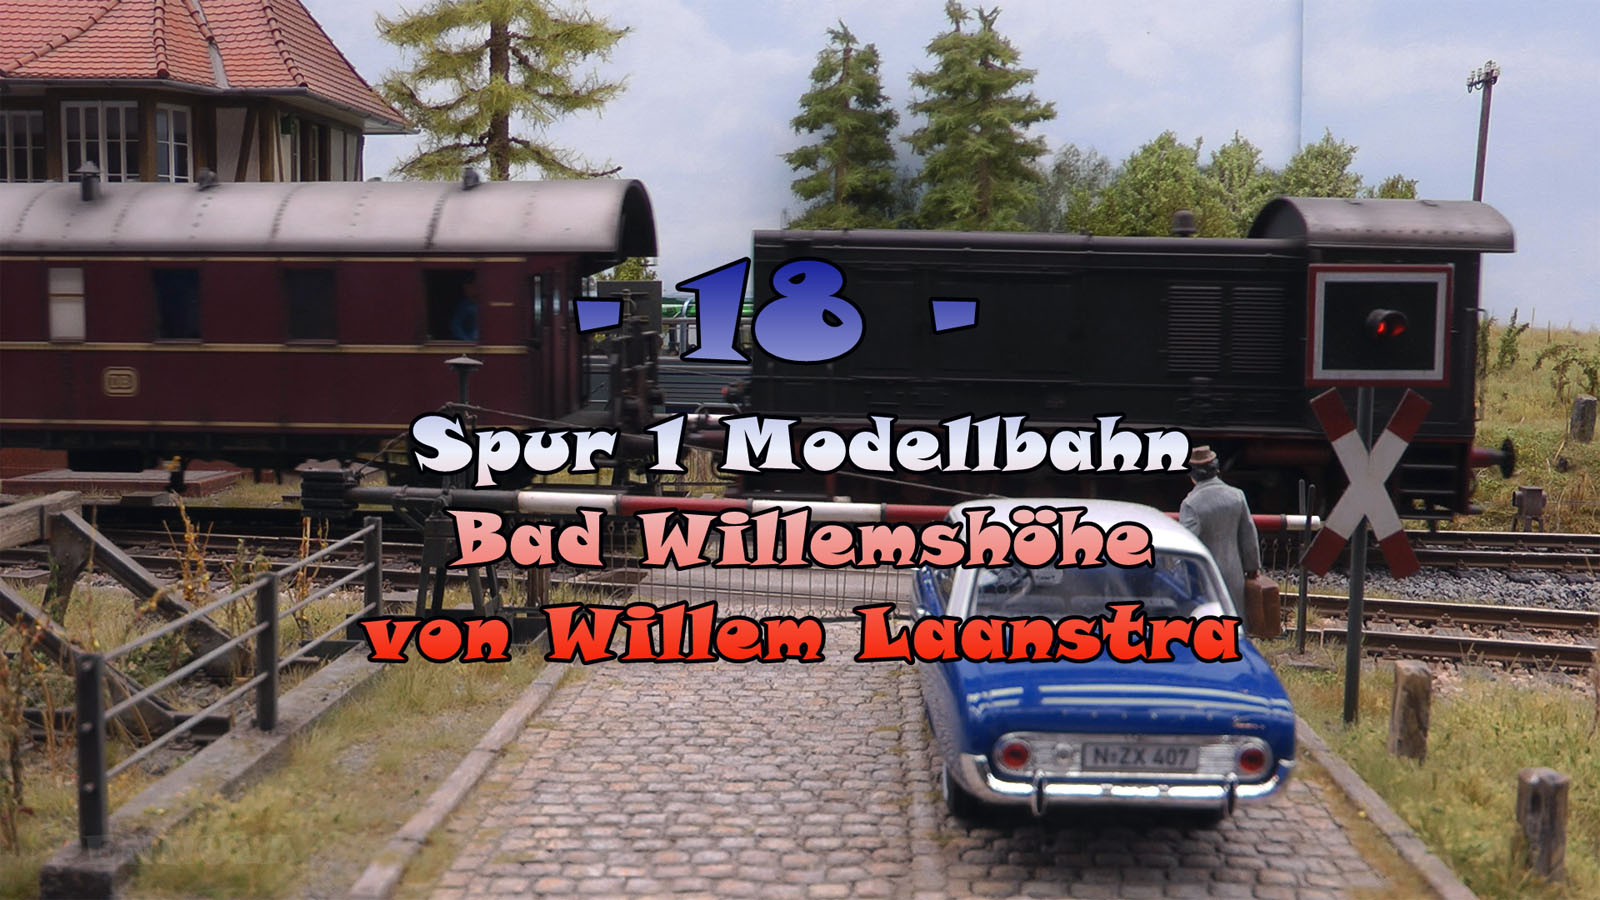 Spur 1 Modellbahn Bad Willemshöhe von Wim Laanstra